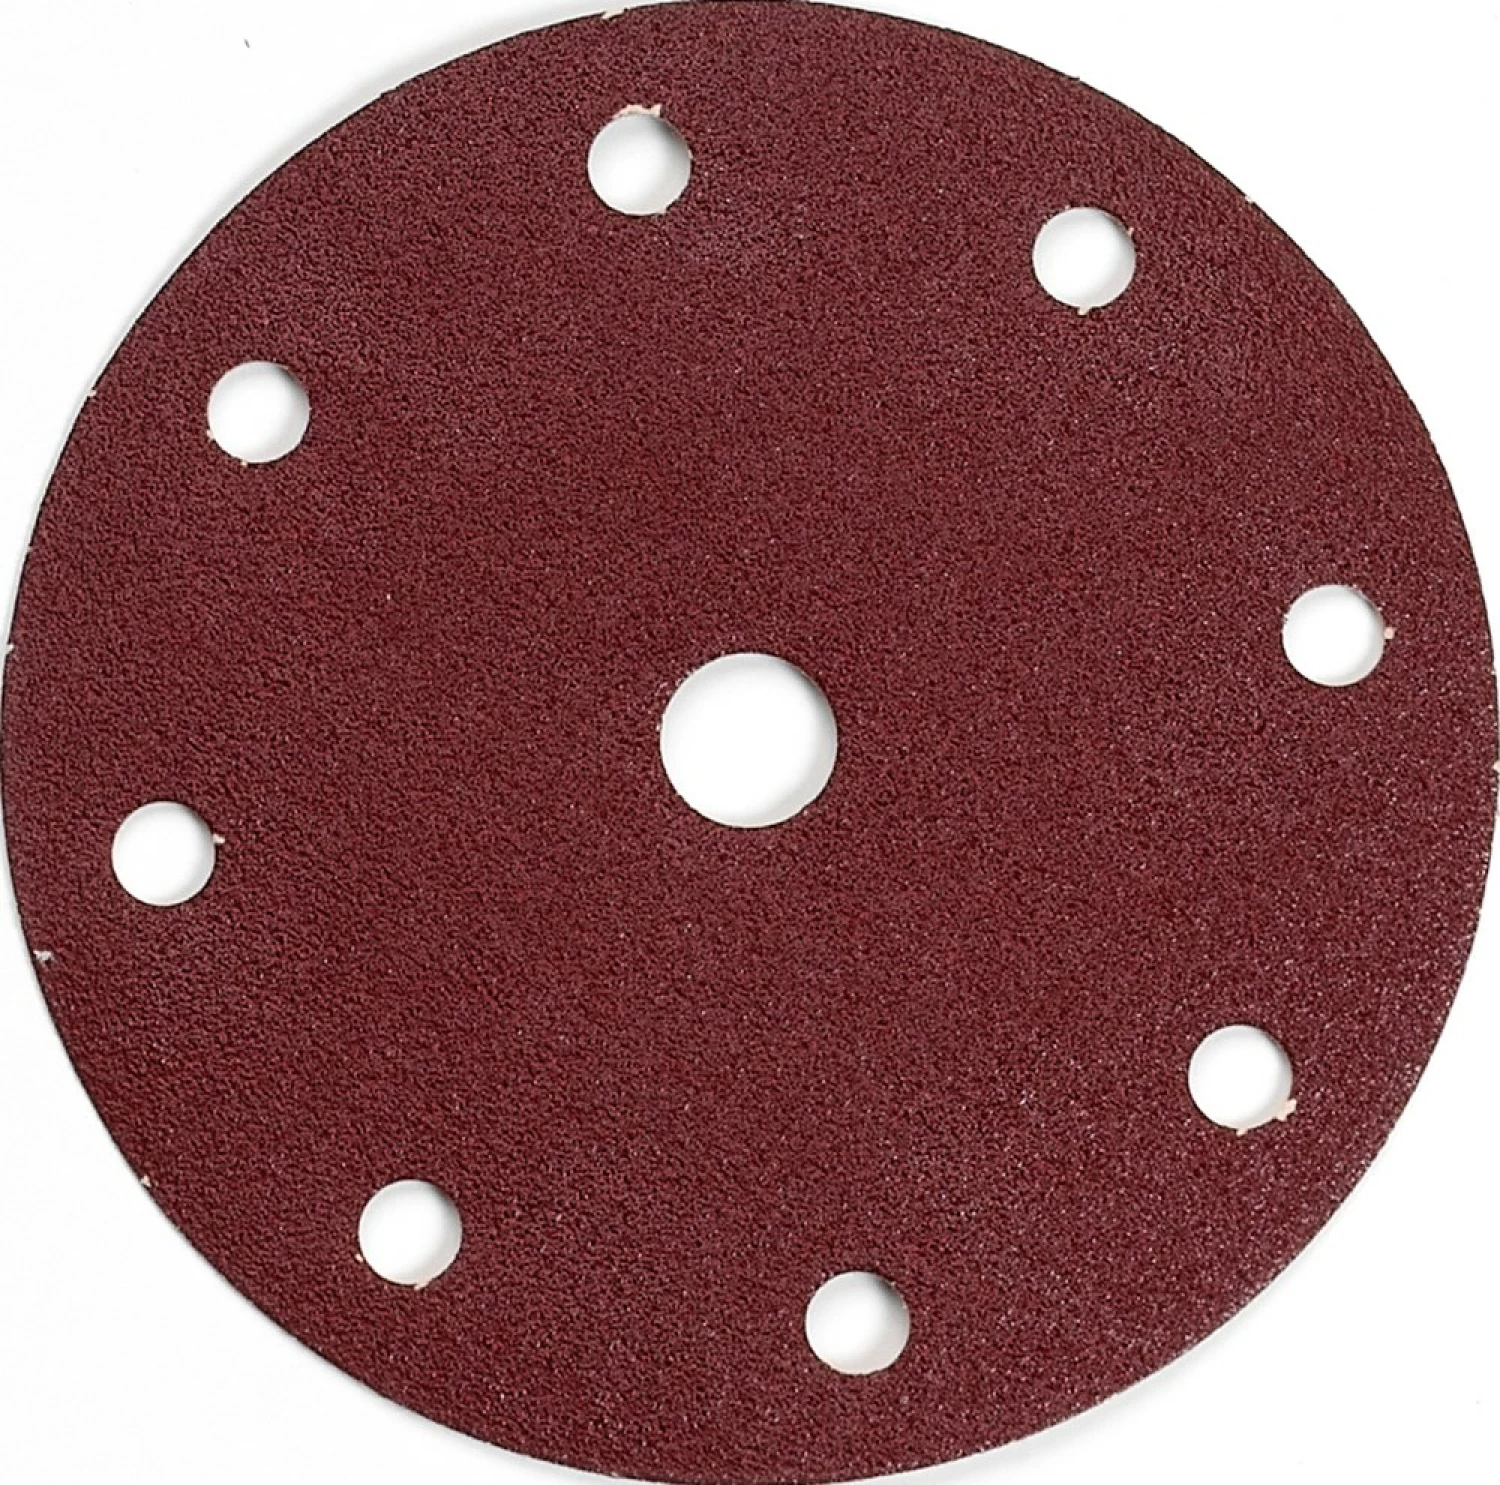 Disque abrasif KP Perfect diamètre 150mm grain 180 - A.C.A.B.